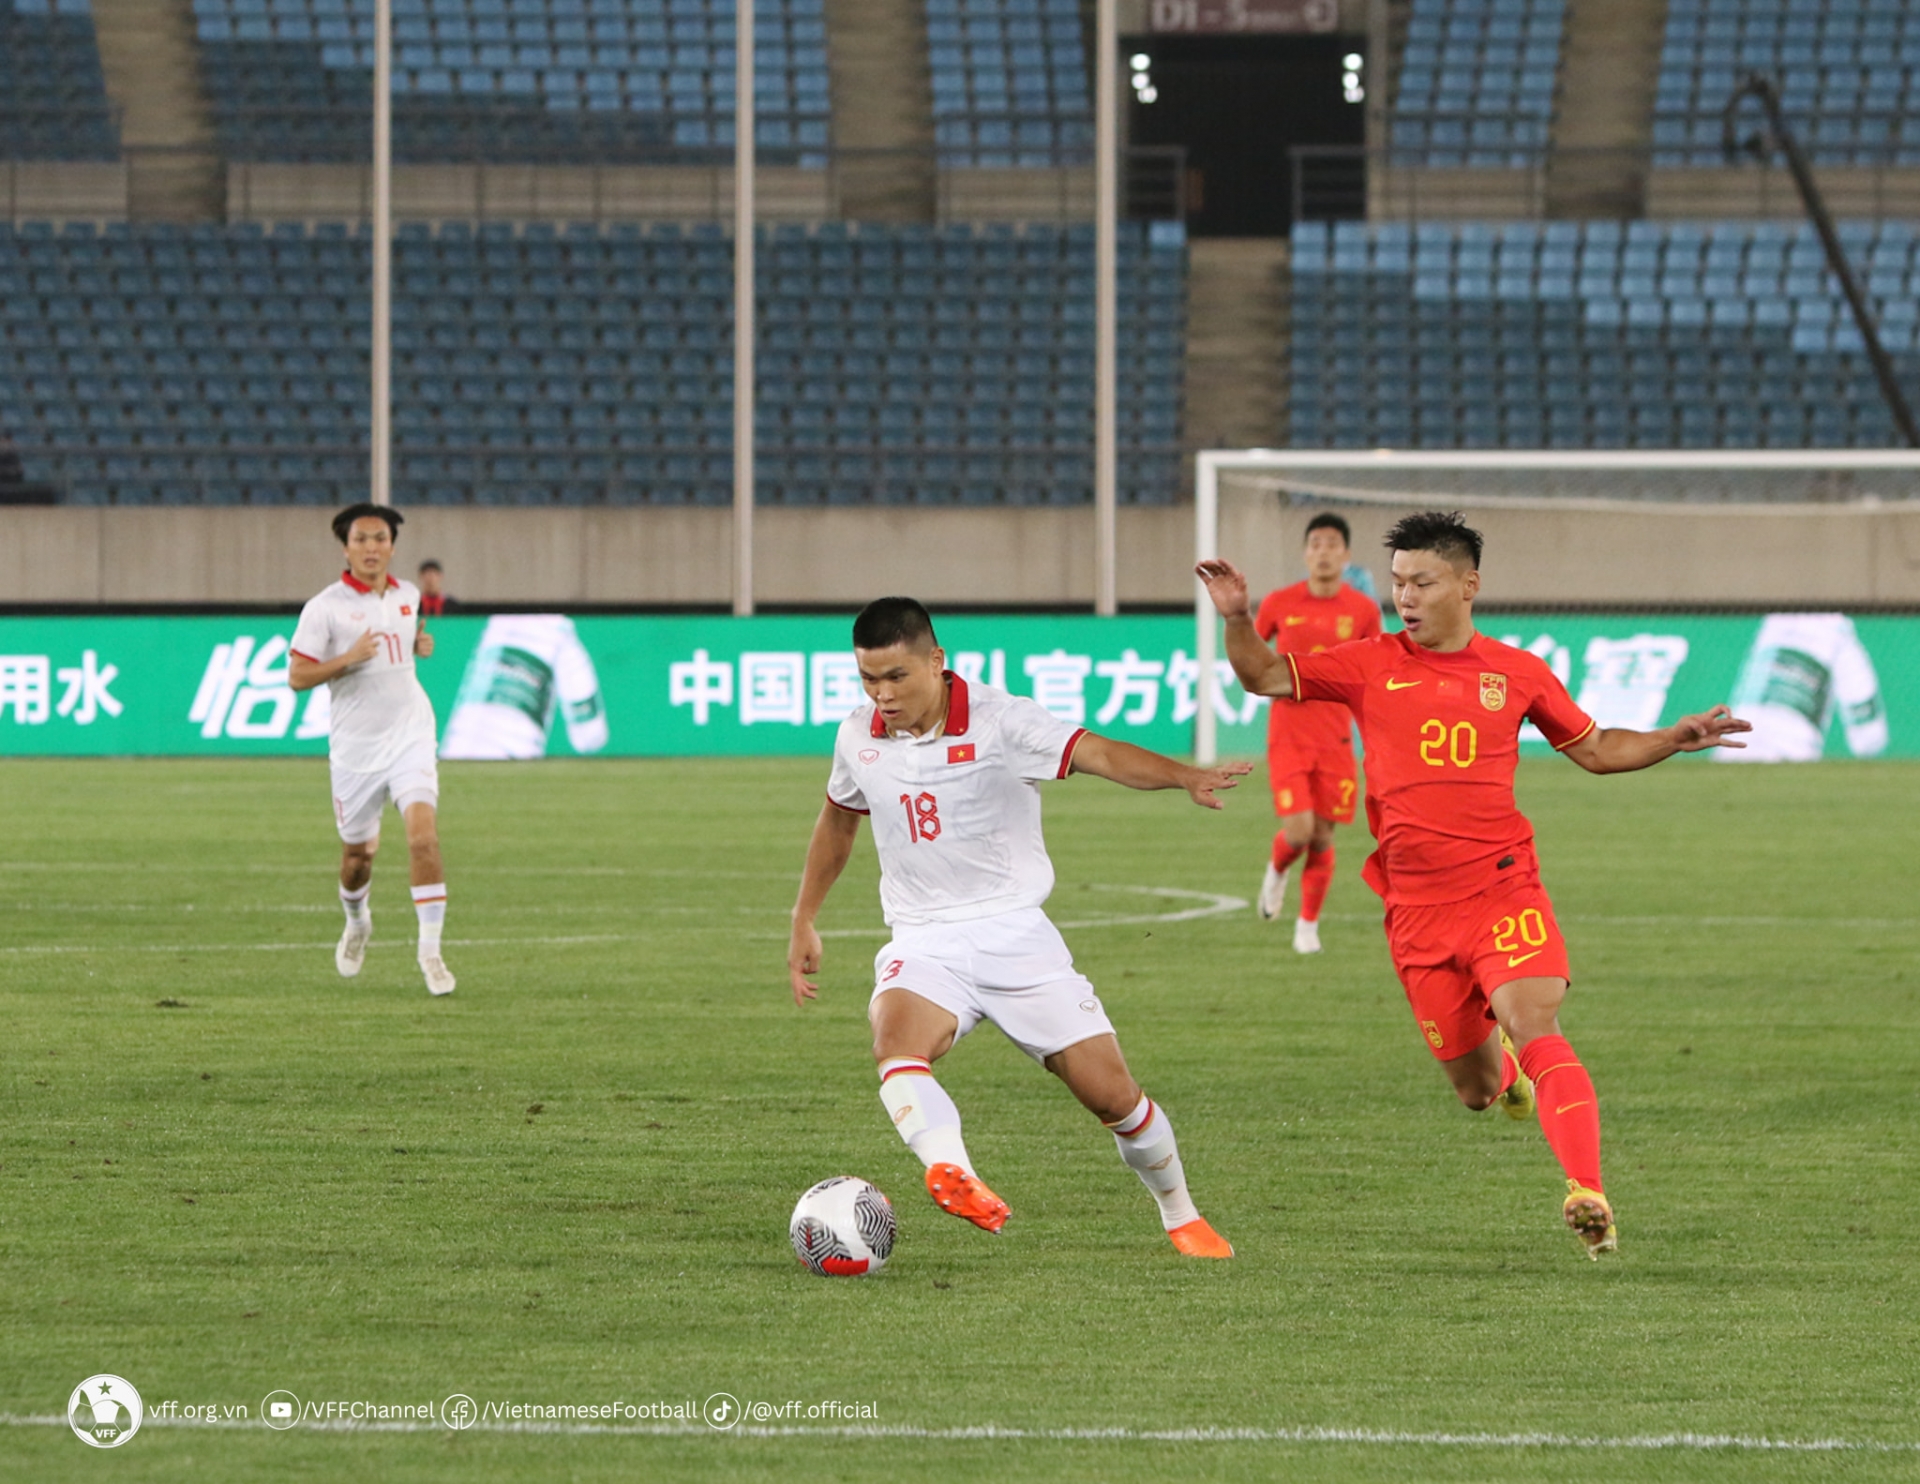 Thua ĐT Trung Quốc, ĐT Việt Nam nhận thêm “tin dữ” từ FIFA - Ảnh 1.